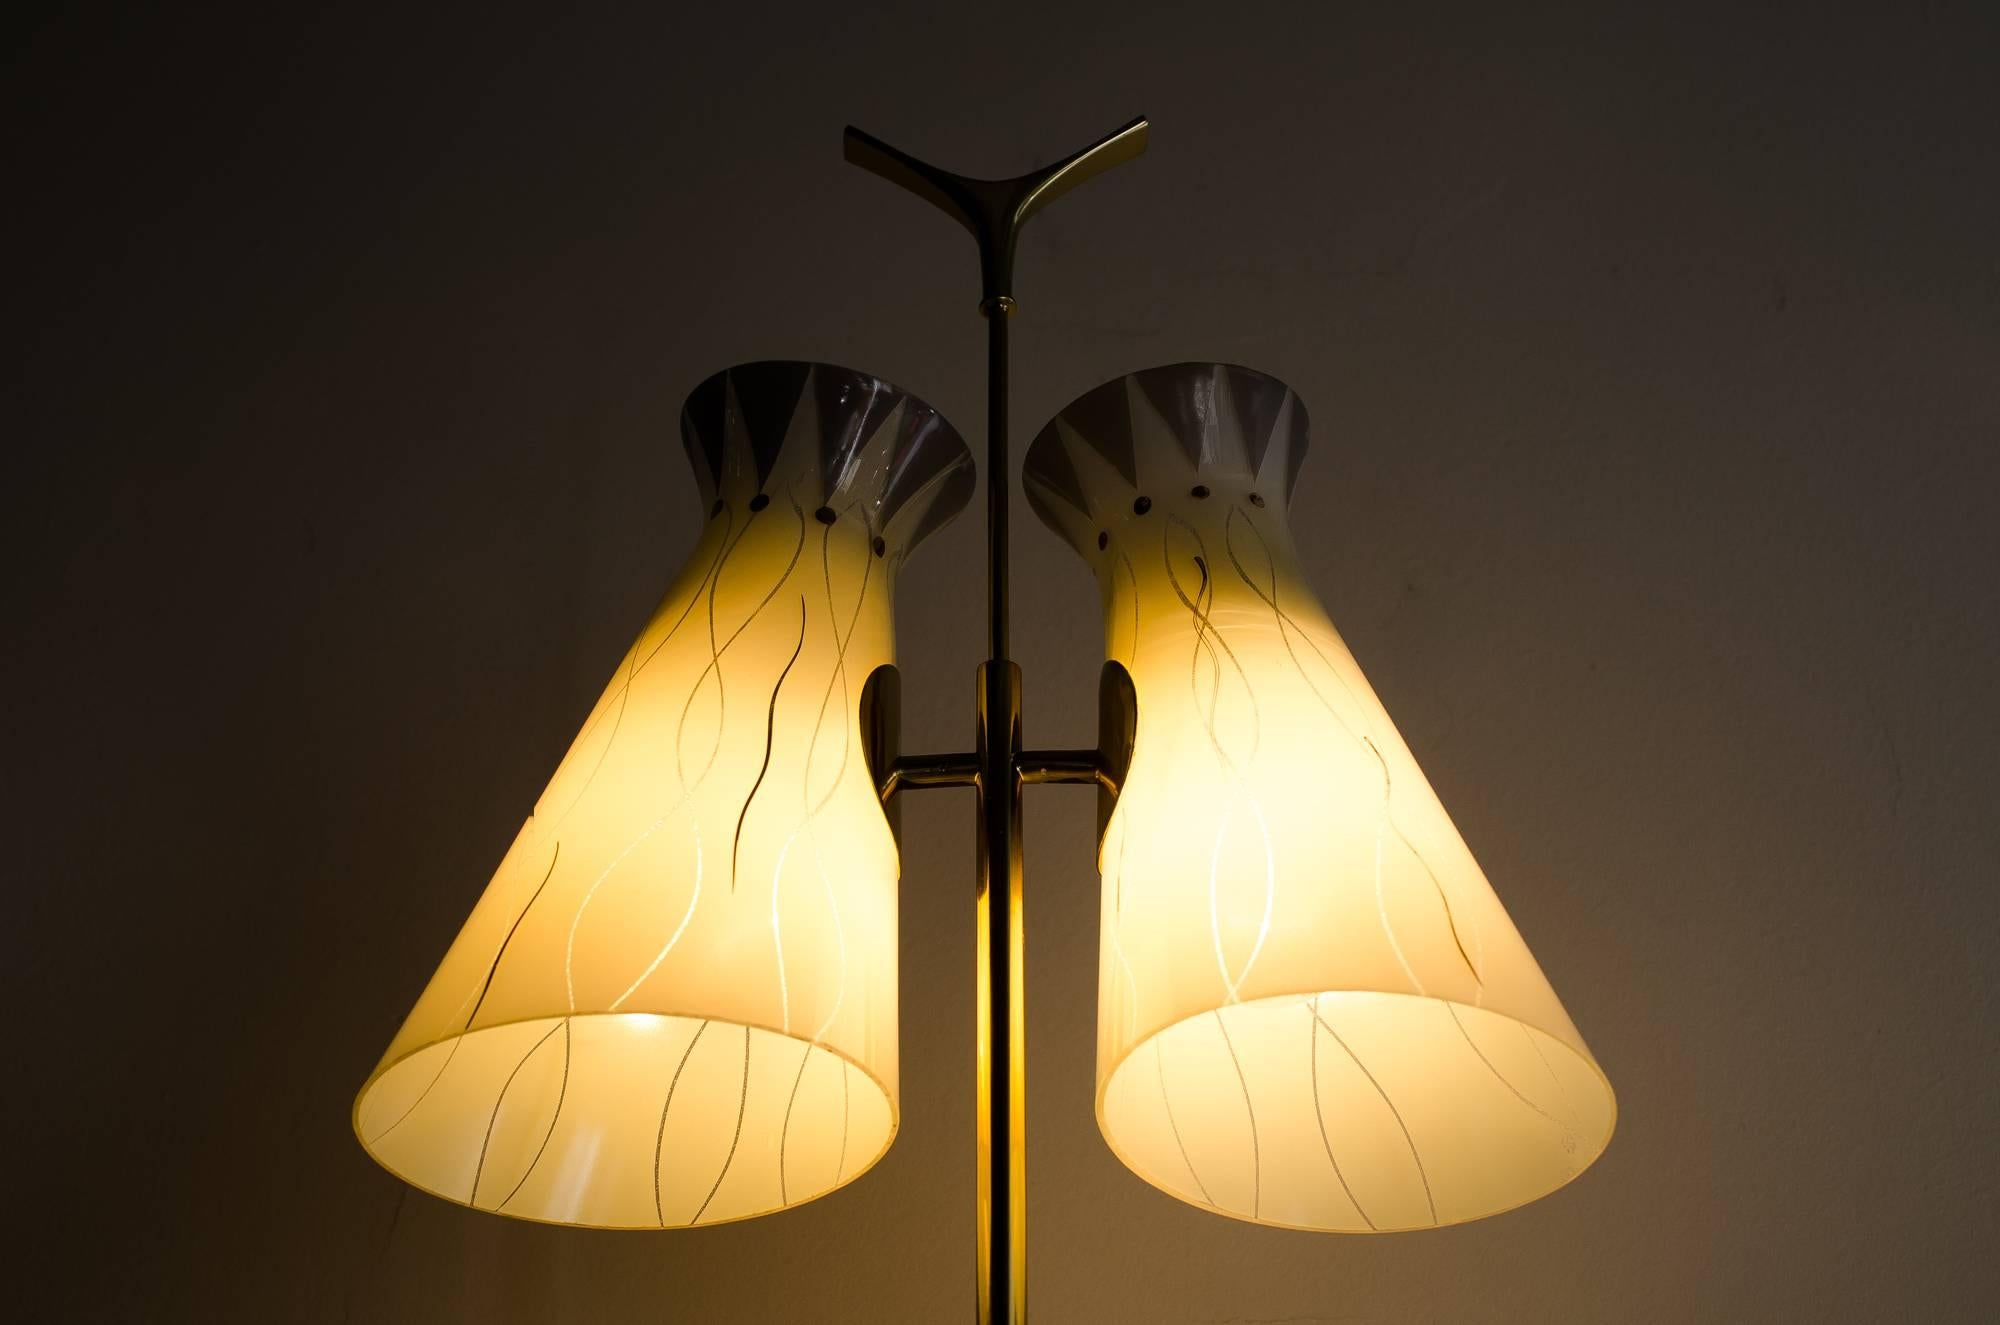 Brass Rupert Nikoll Floor Lamp with Original Glass Shades